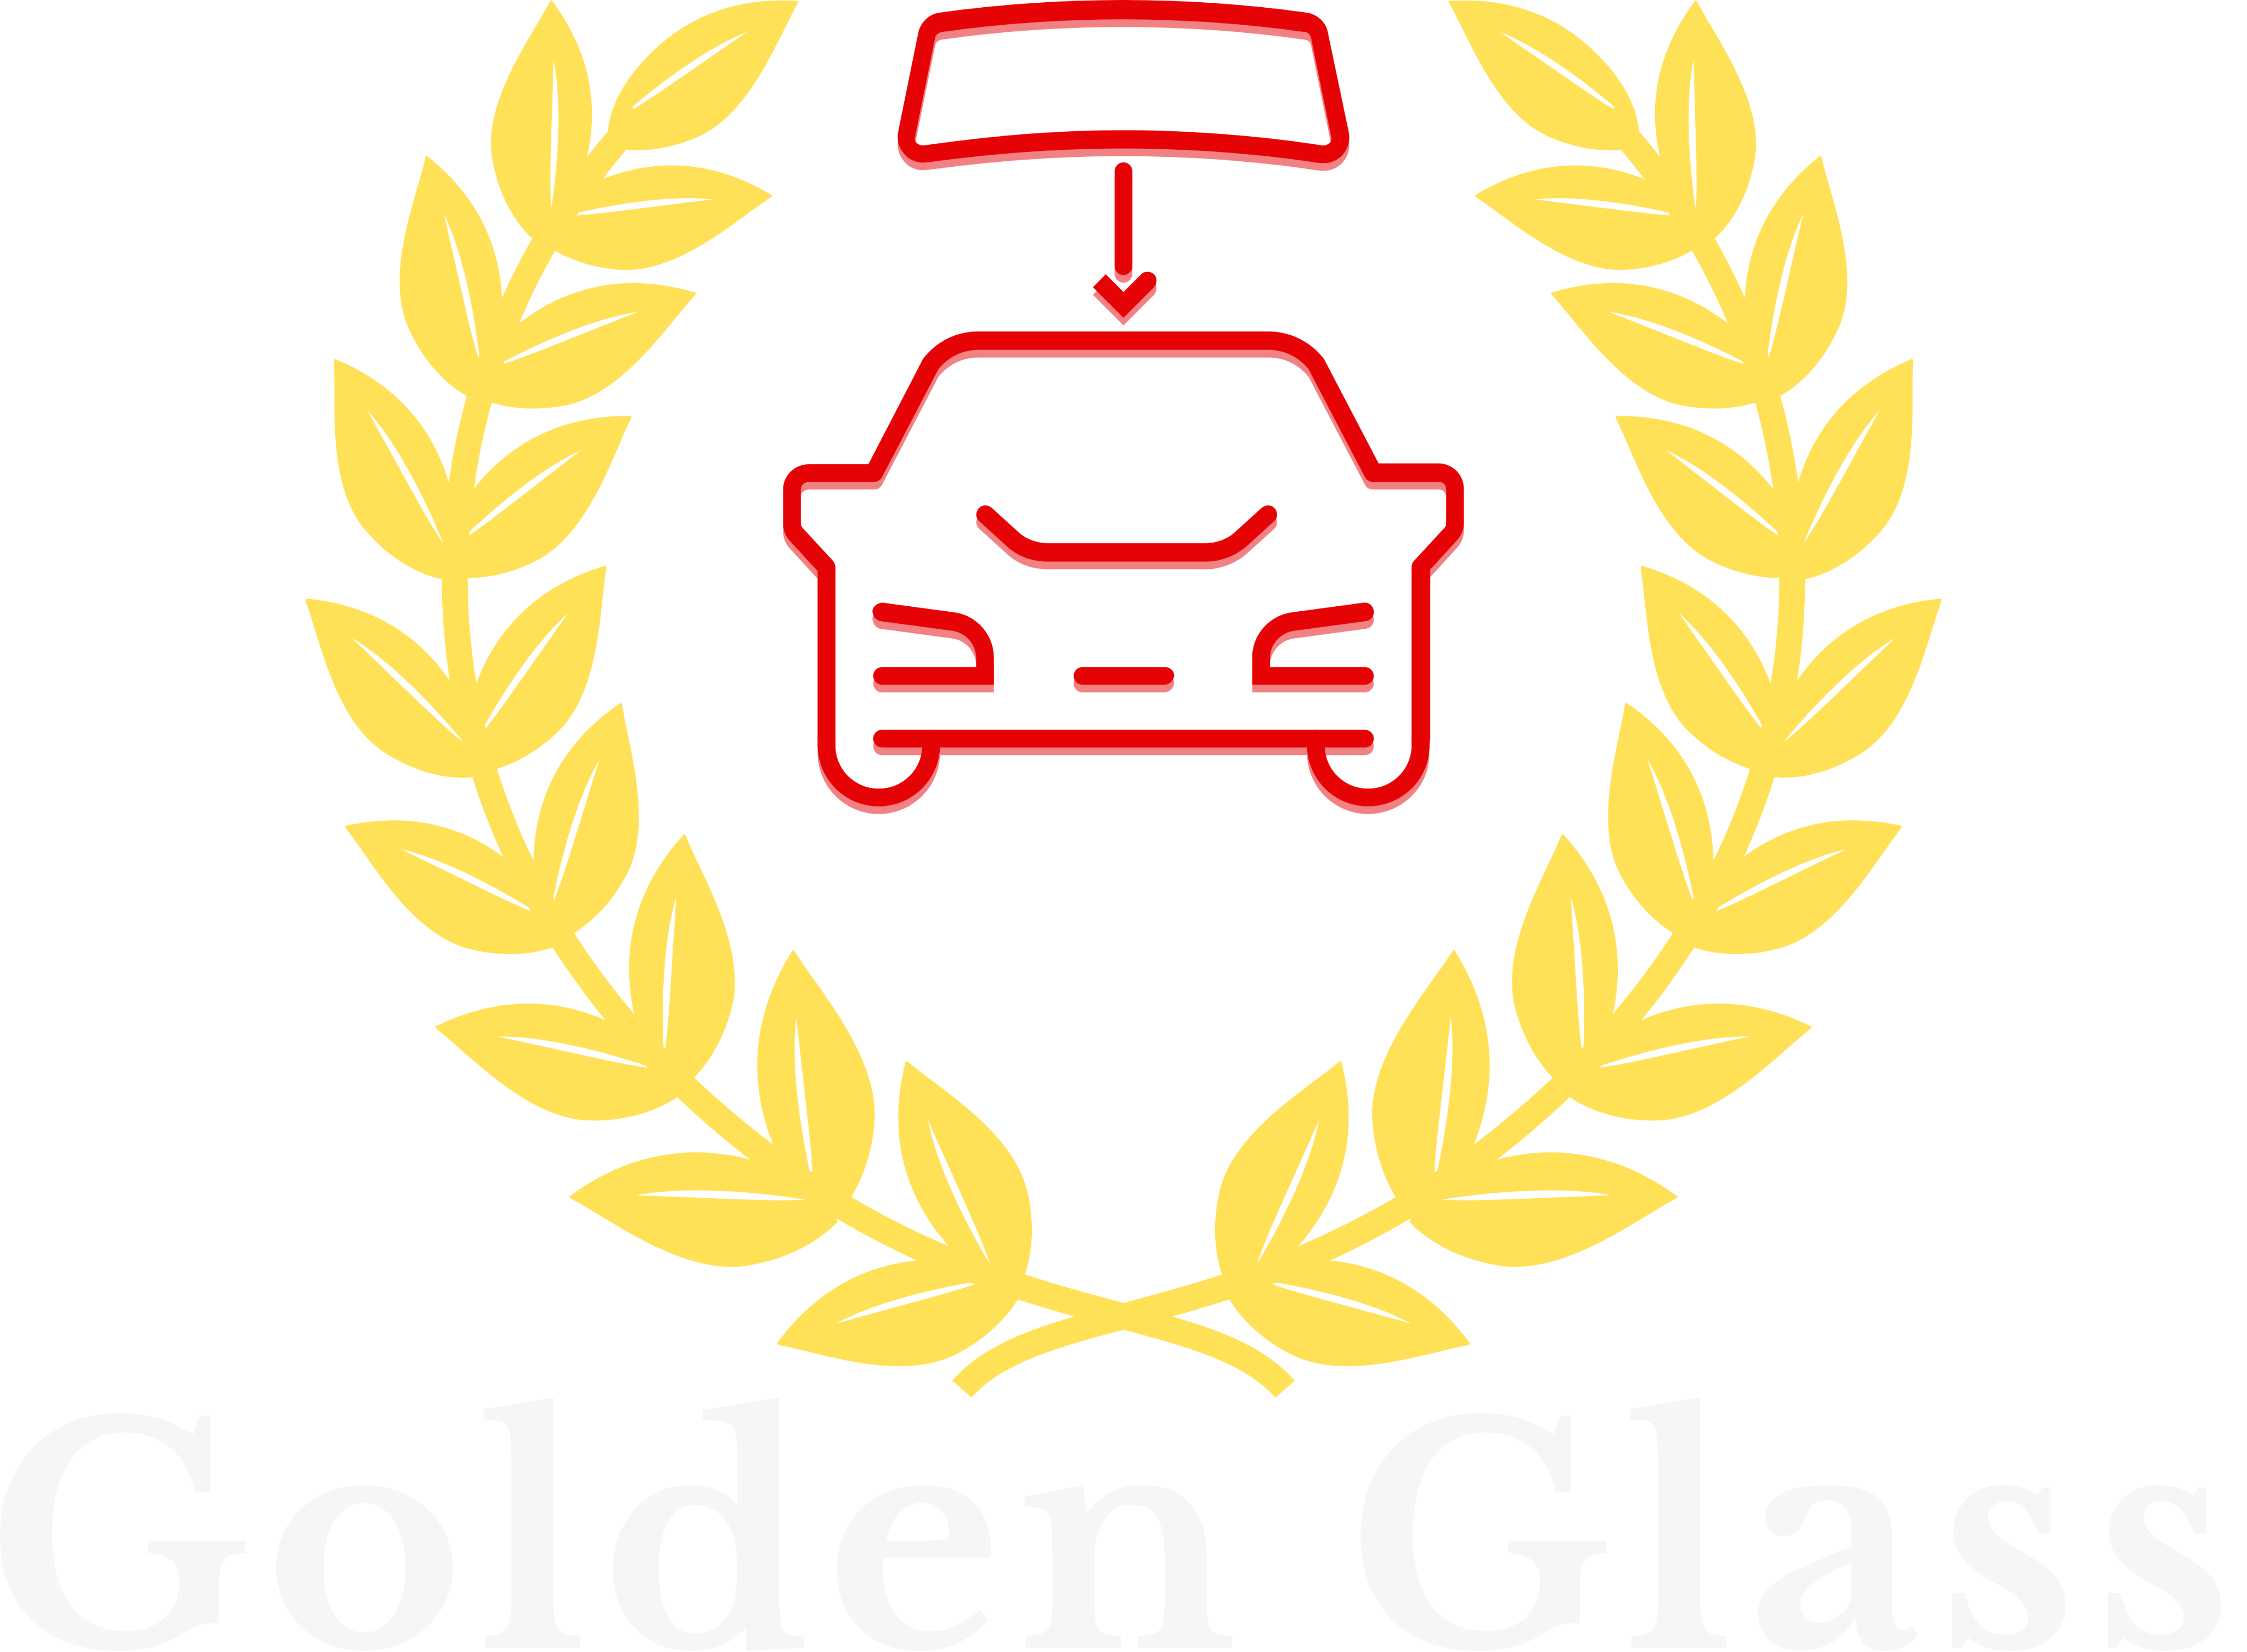 GOLDEN GLASS